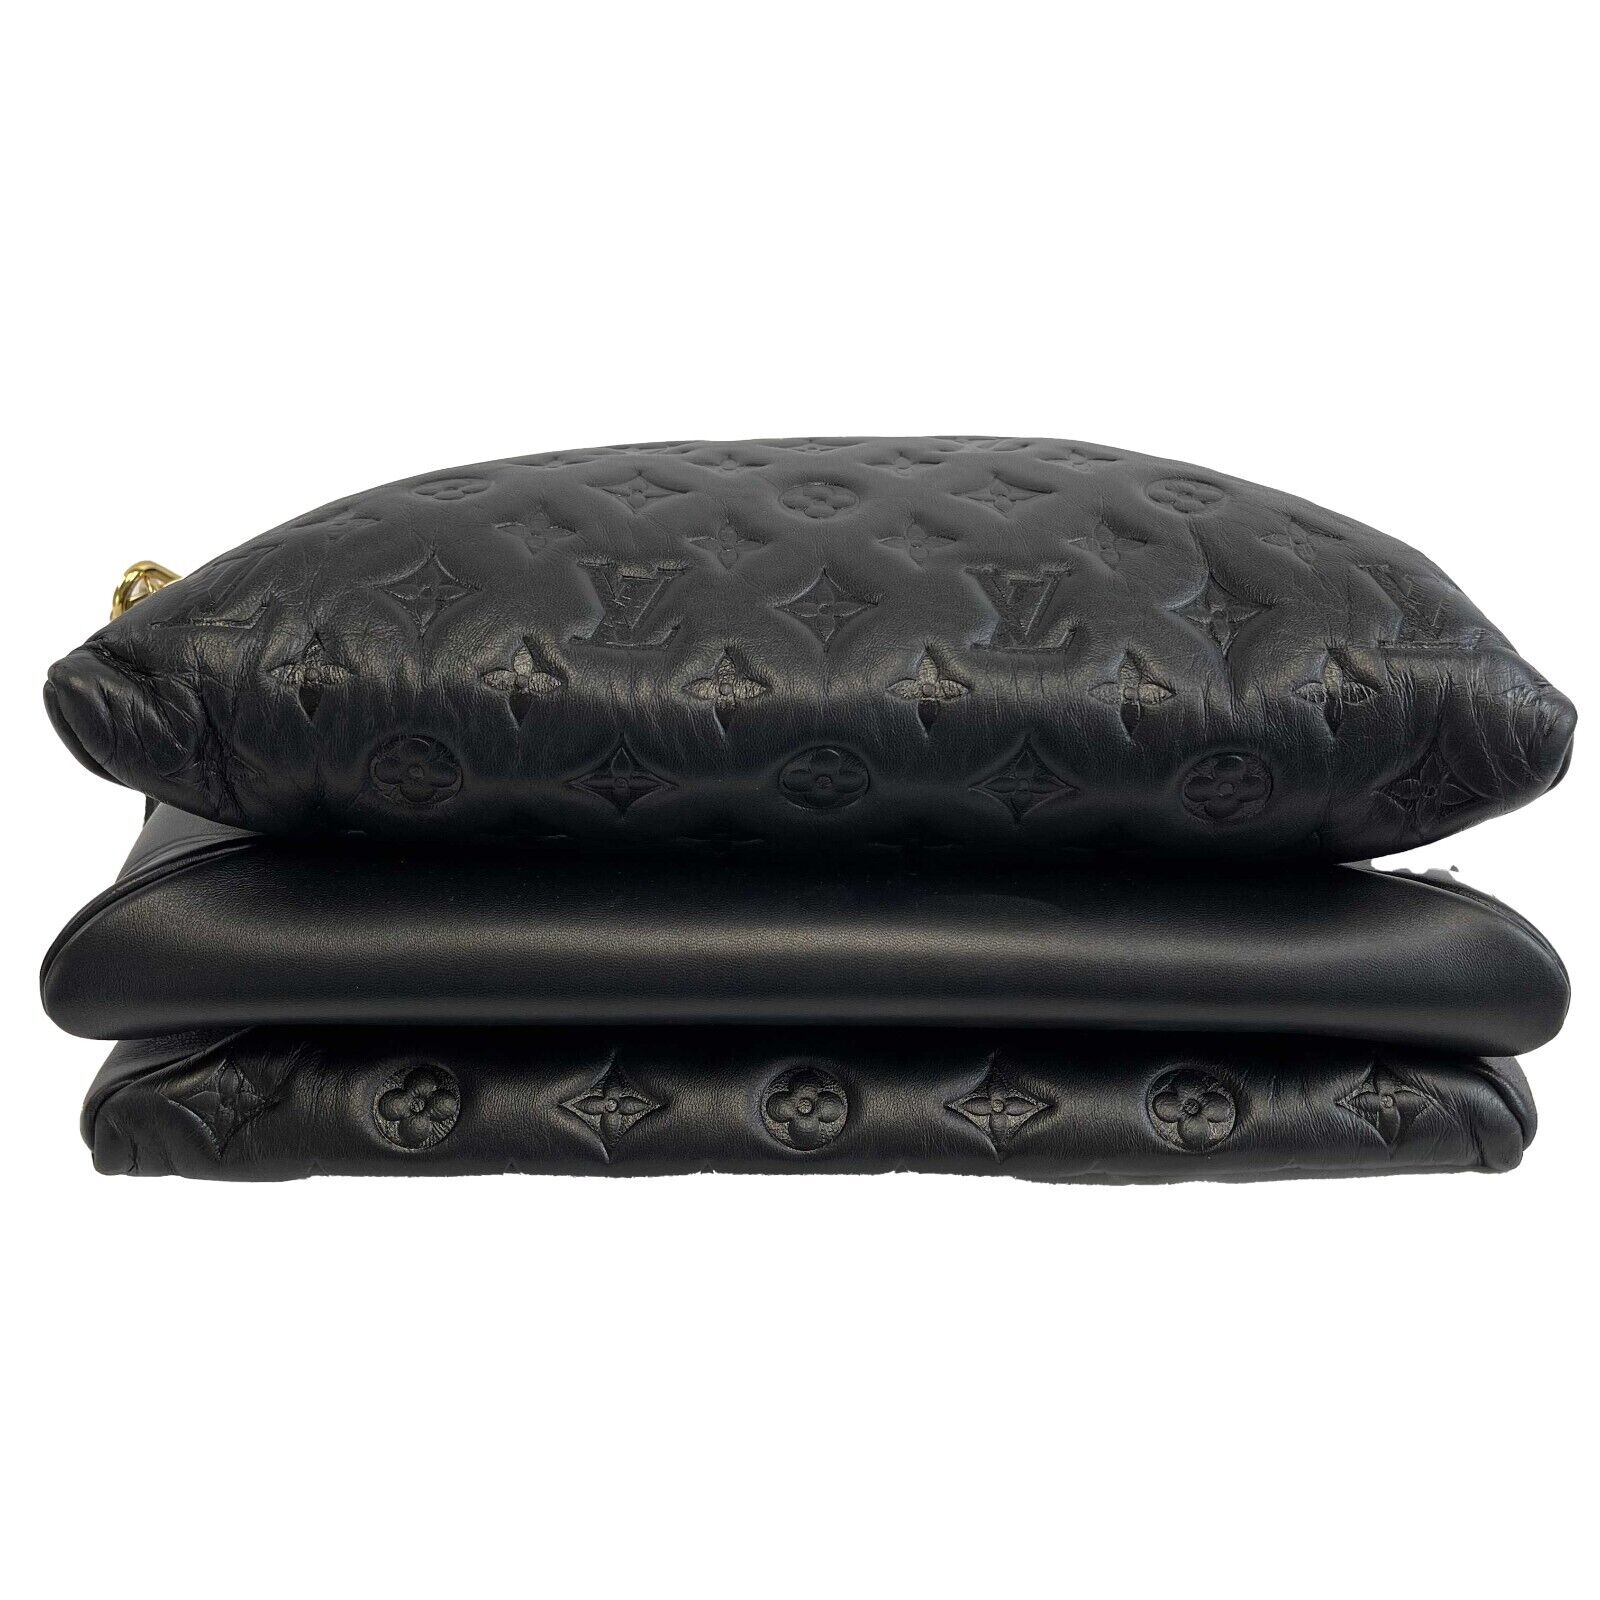 Louis Vuitton Coussin Leather Shoulder Bag